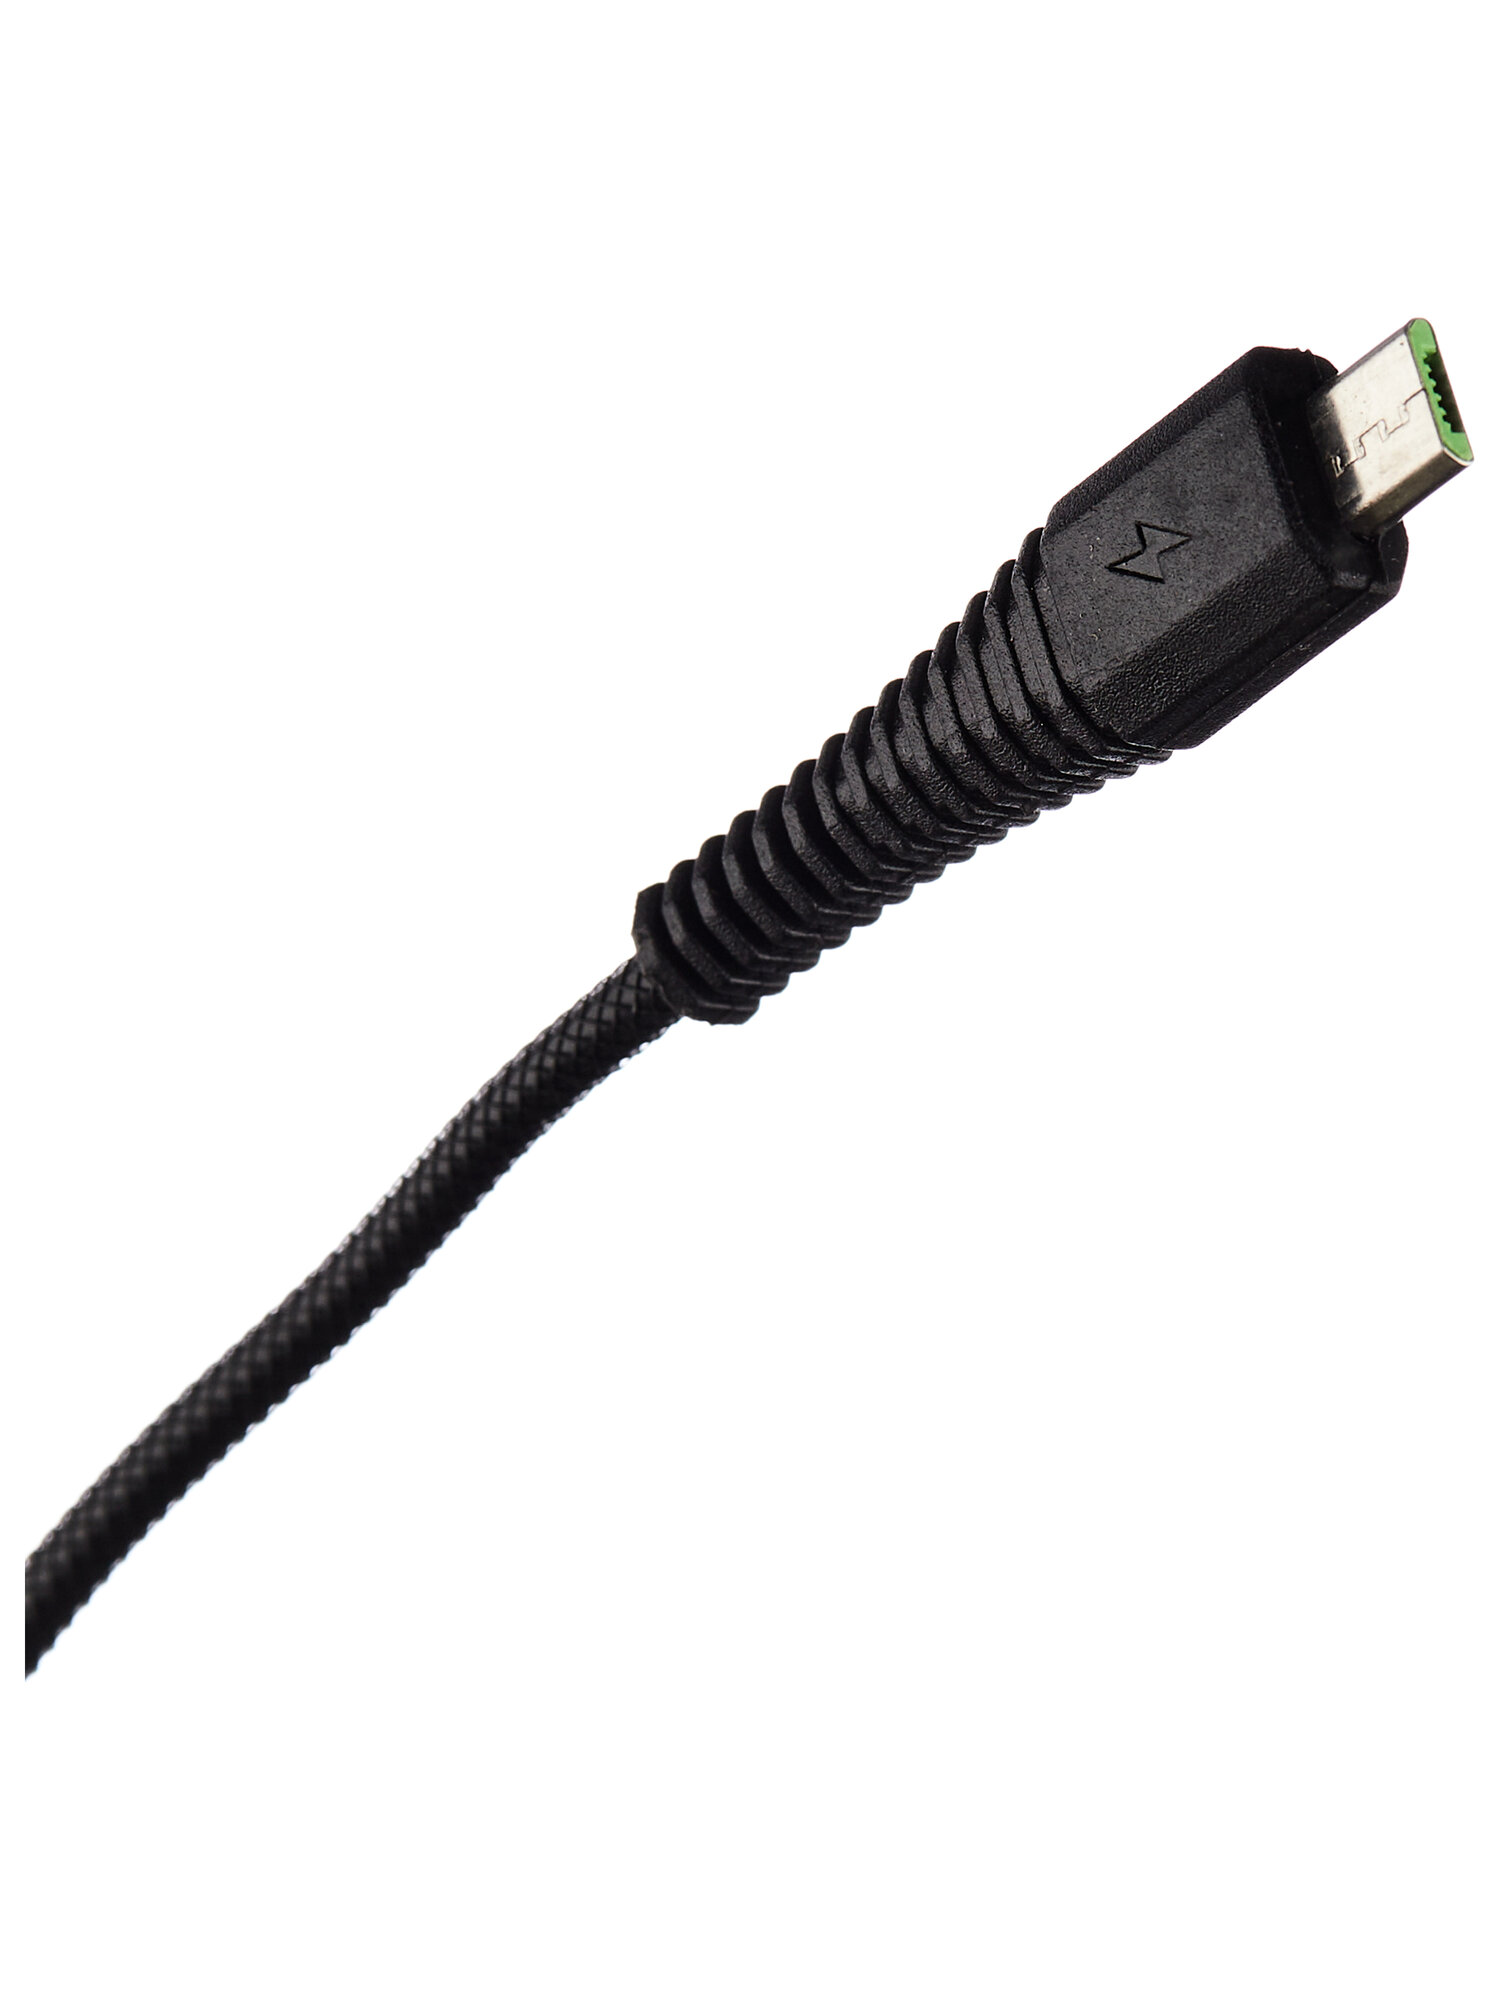 Дата-кабель Smartbuy USB - micro USB "карбон" экстрапрочный длина 20 м до 2А черный (iK-20n-2)